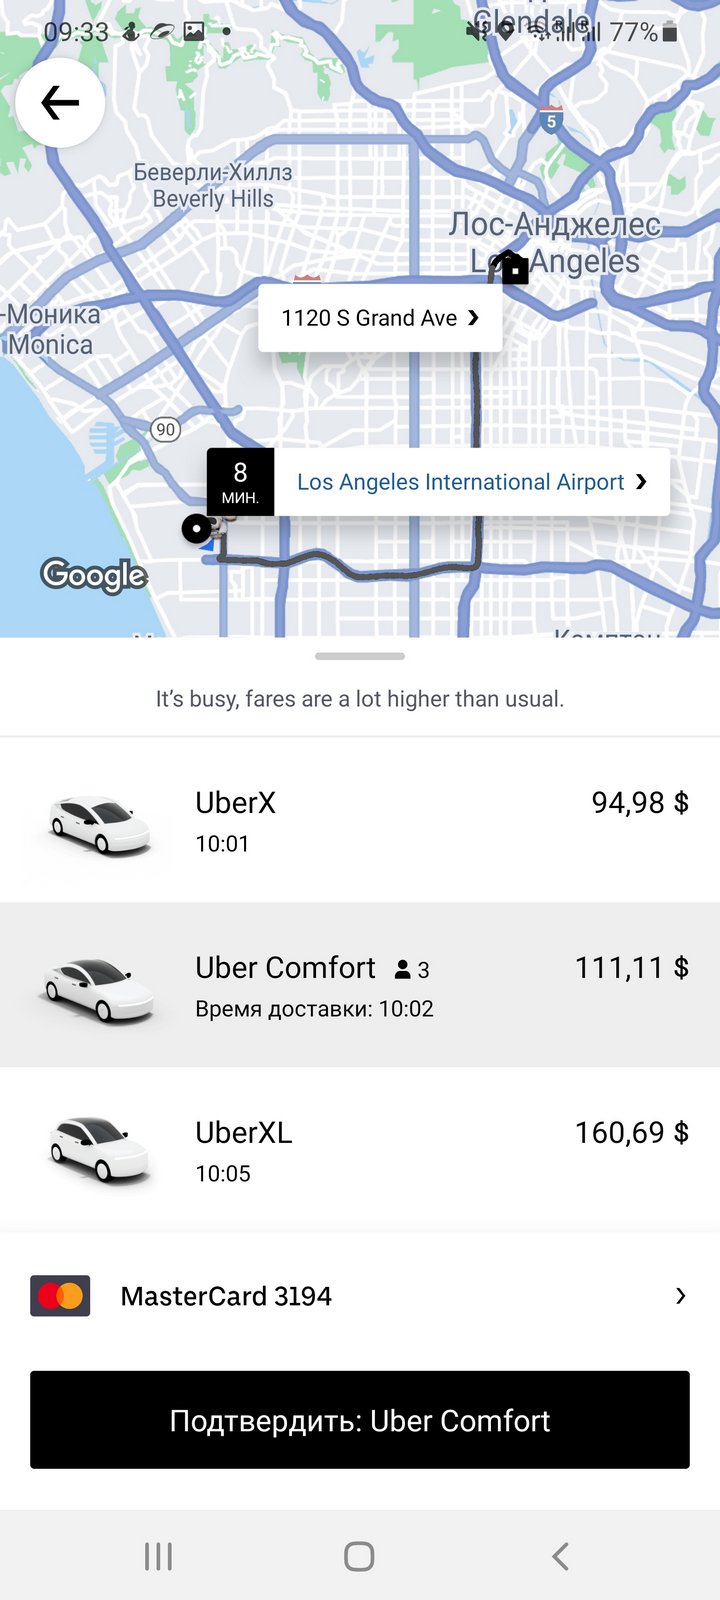 Как изменился Uber в США — от увлечения к рутинному бизнесу